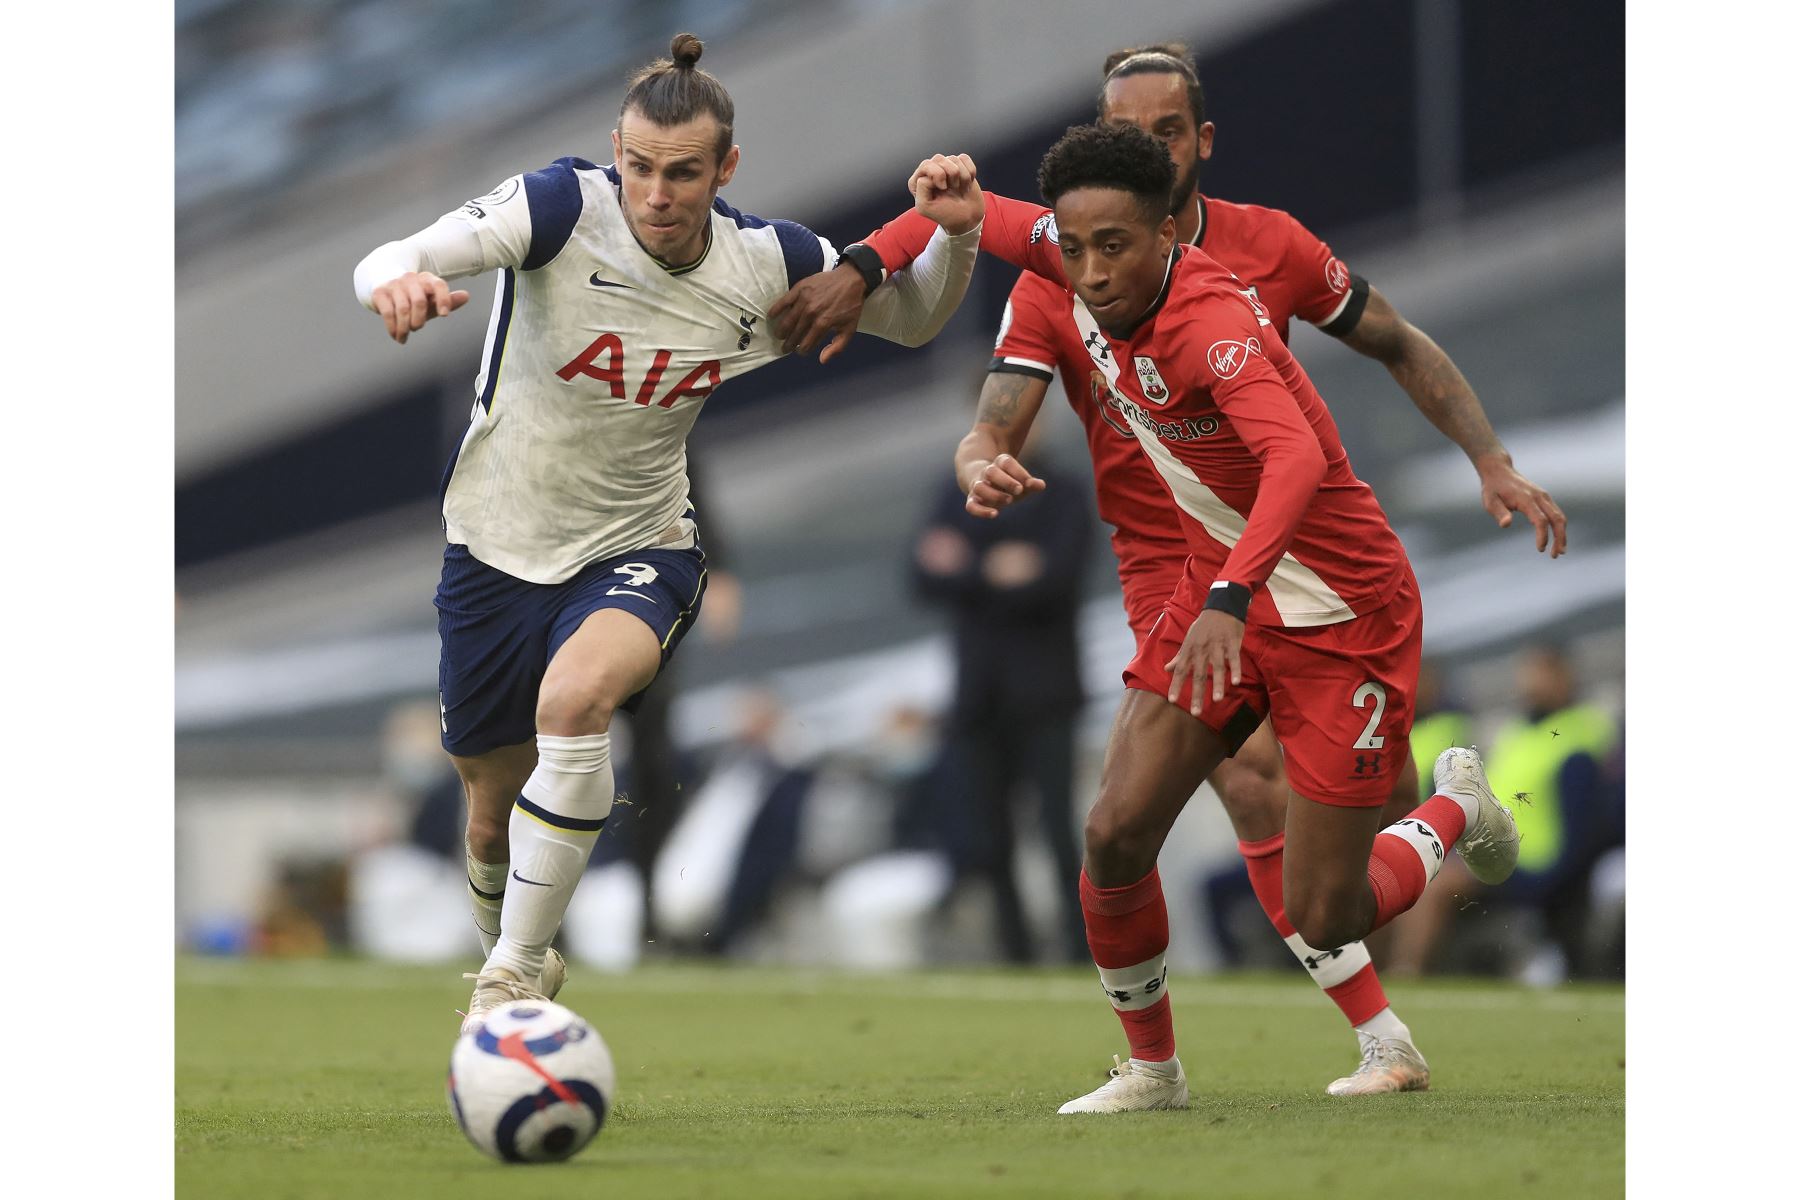 El centrocampista galés del Tottenham Hotspur Gareth Bale huye del defensor inglés de Southampton Kyle Walker-Peters durante el partido de fútbol de la Premier League. Foto: AFP